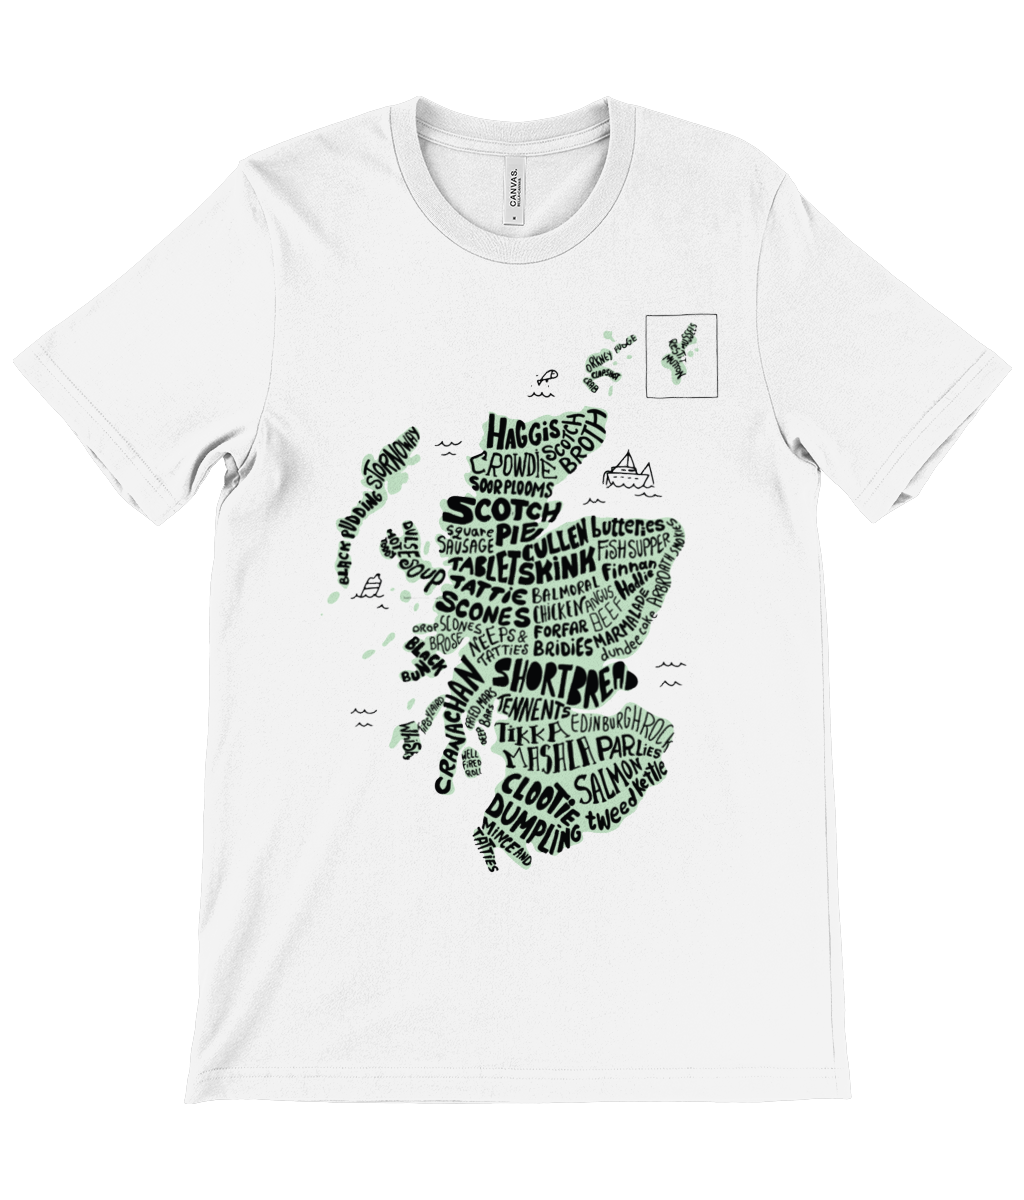 Foods of Scotland Map T-Shirt Green